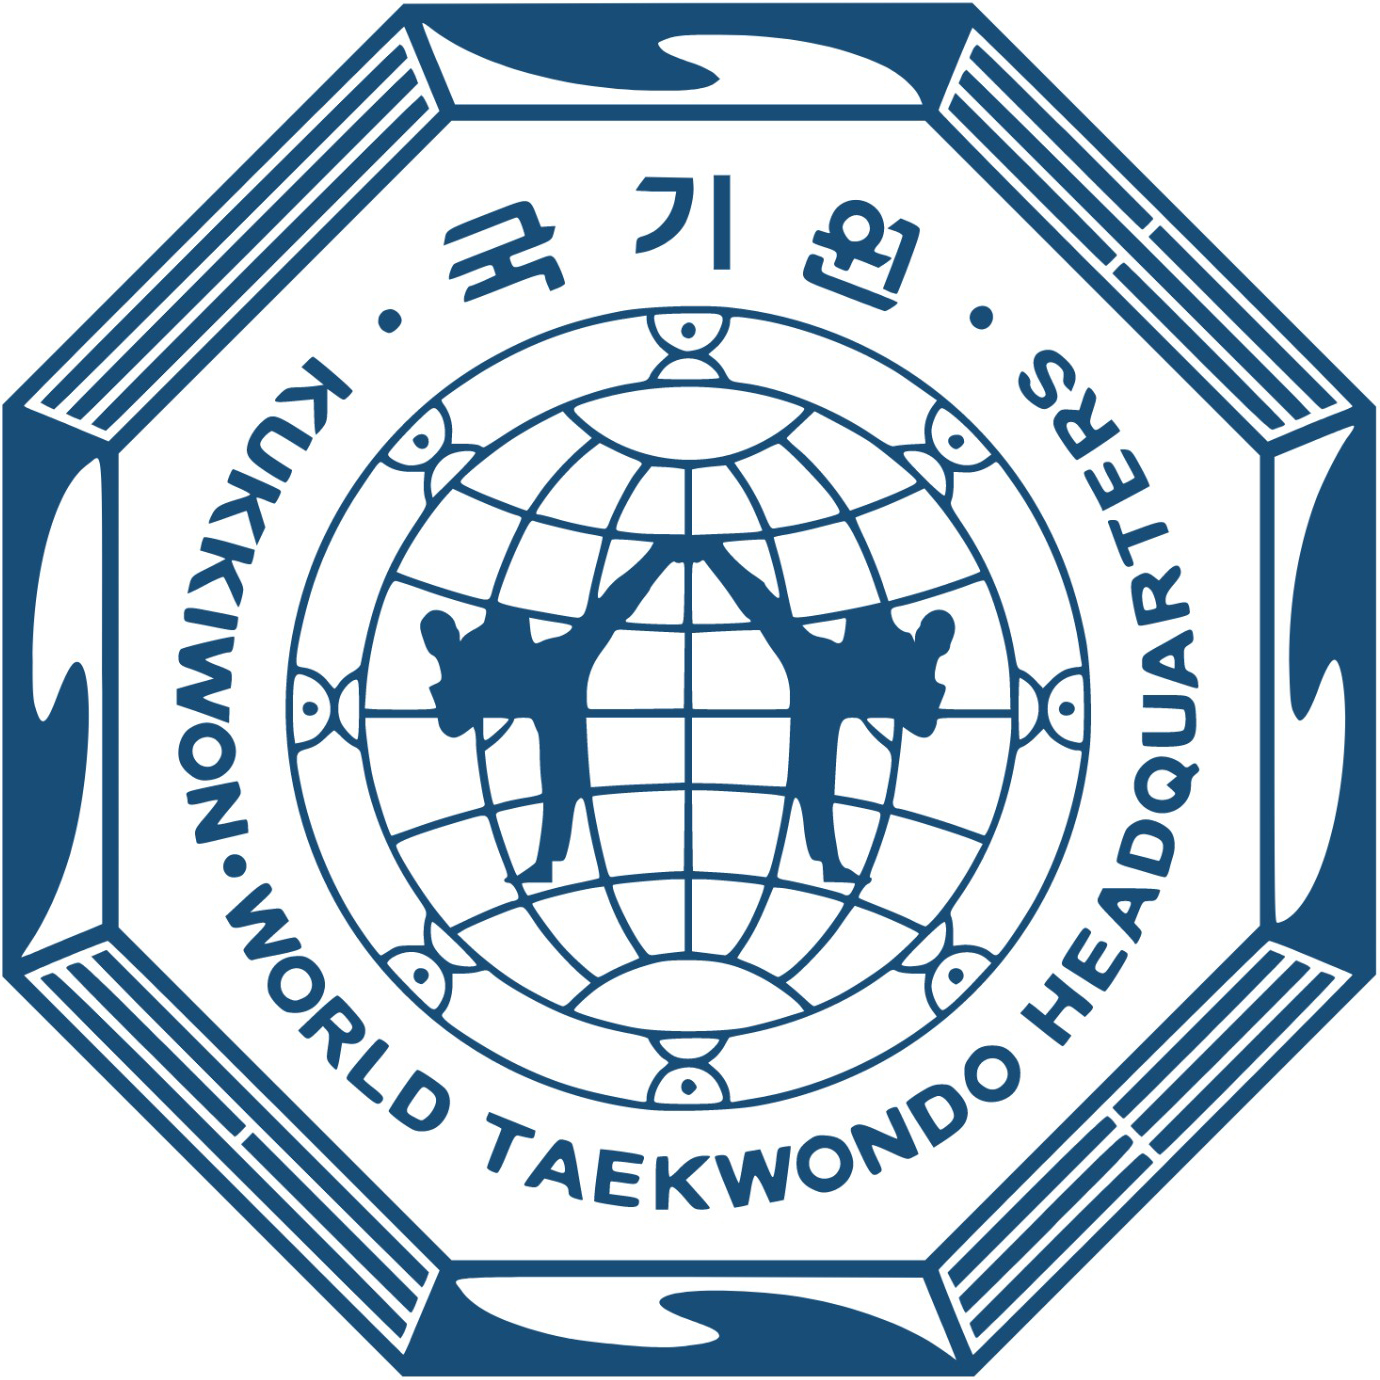 World Taekwondo HQ